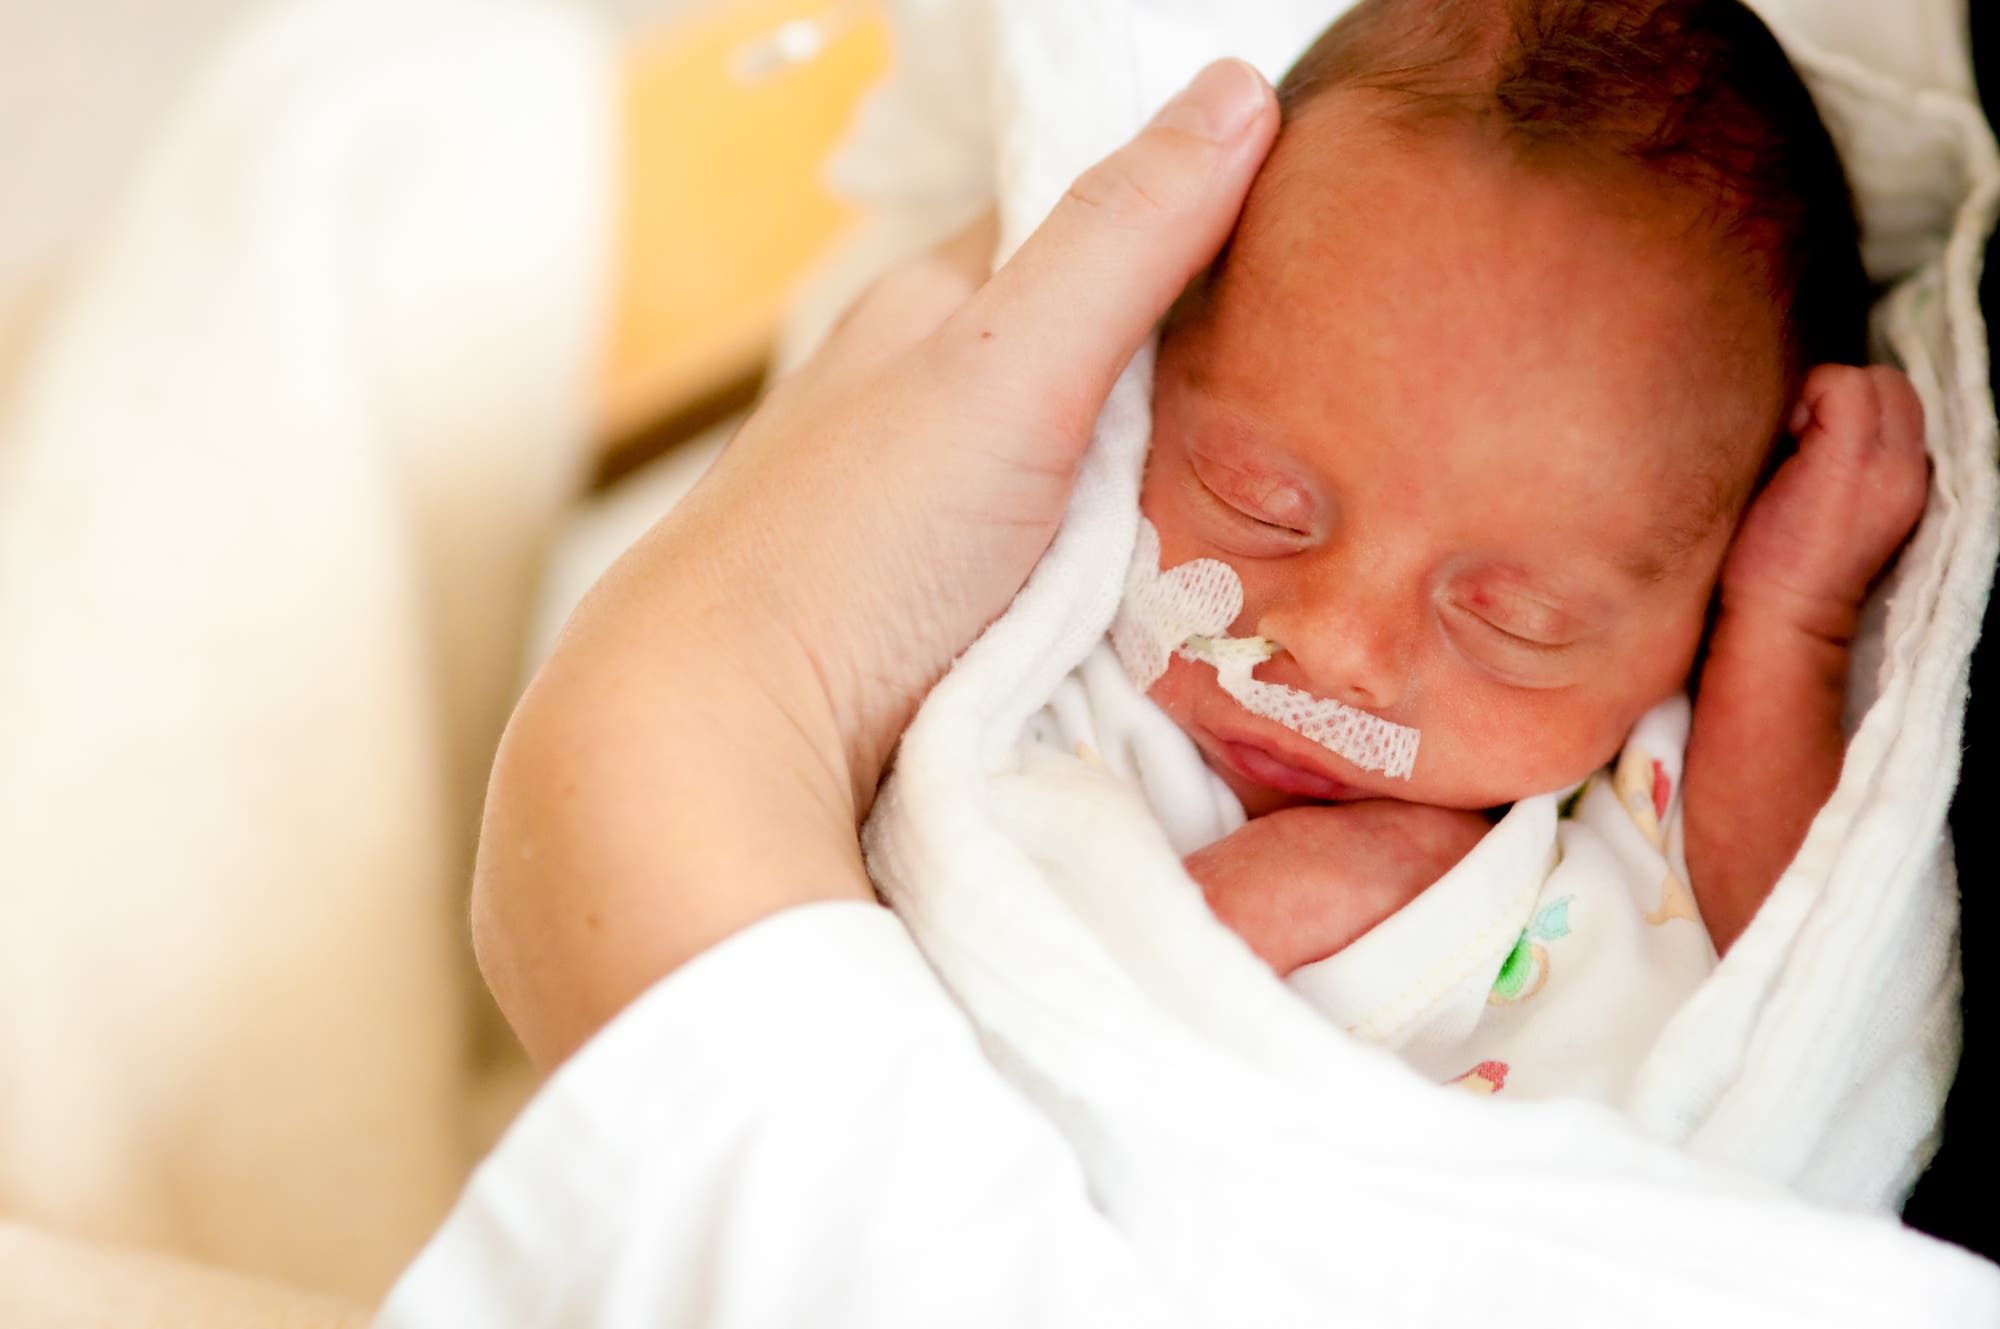 Frühgeborene sollen heute möglichst früh körperlichen Kontakt mit ihrer Mutter bekommen, denn Berührungen fördern ihre Entwicklung.